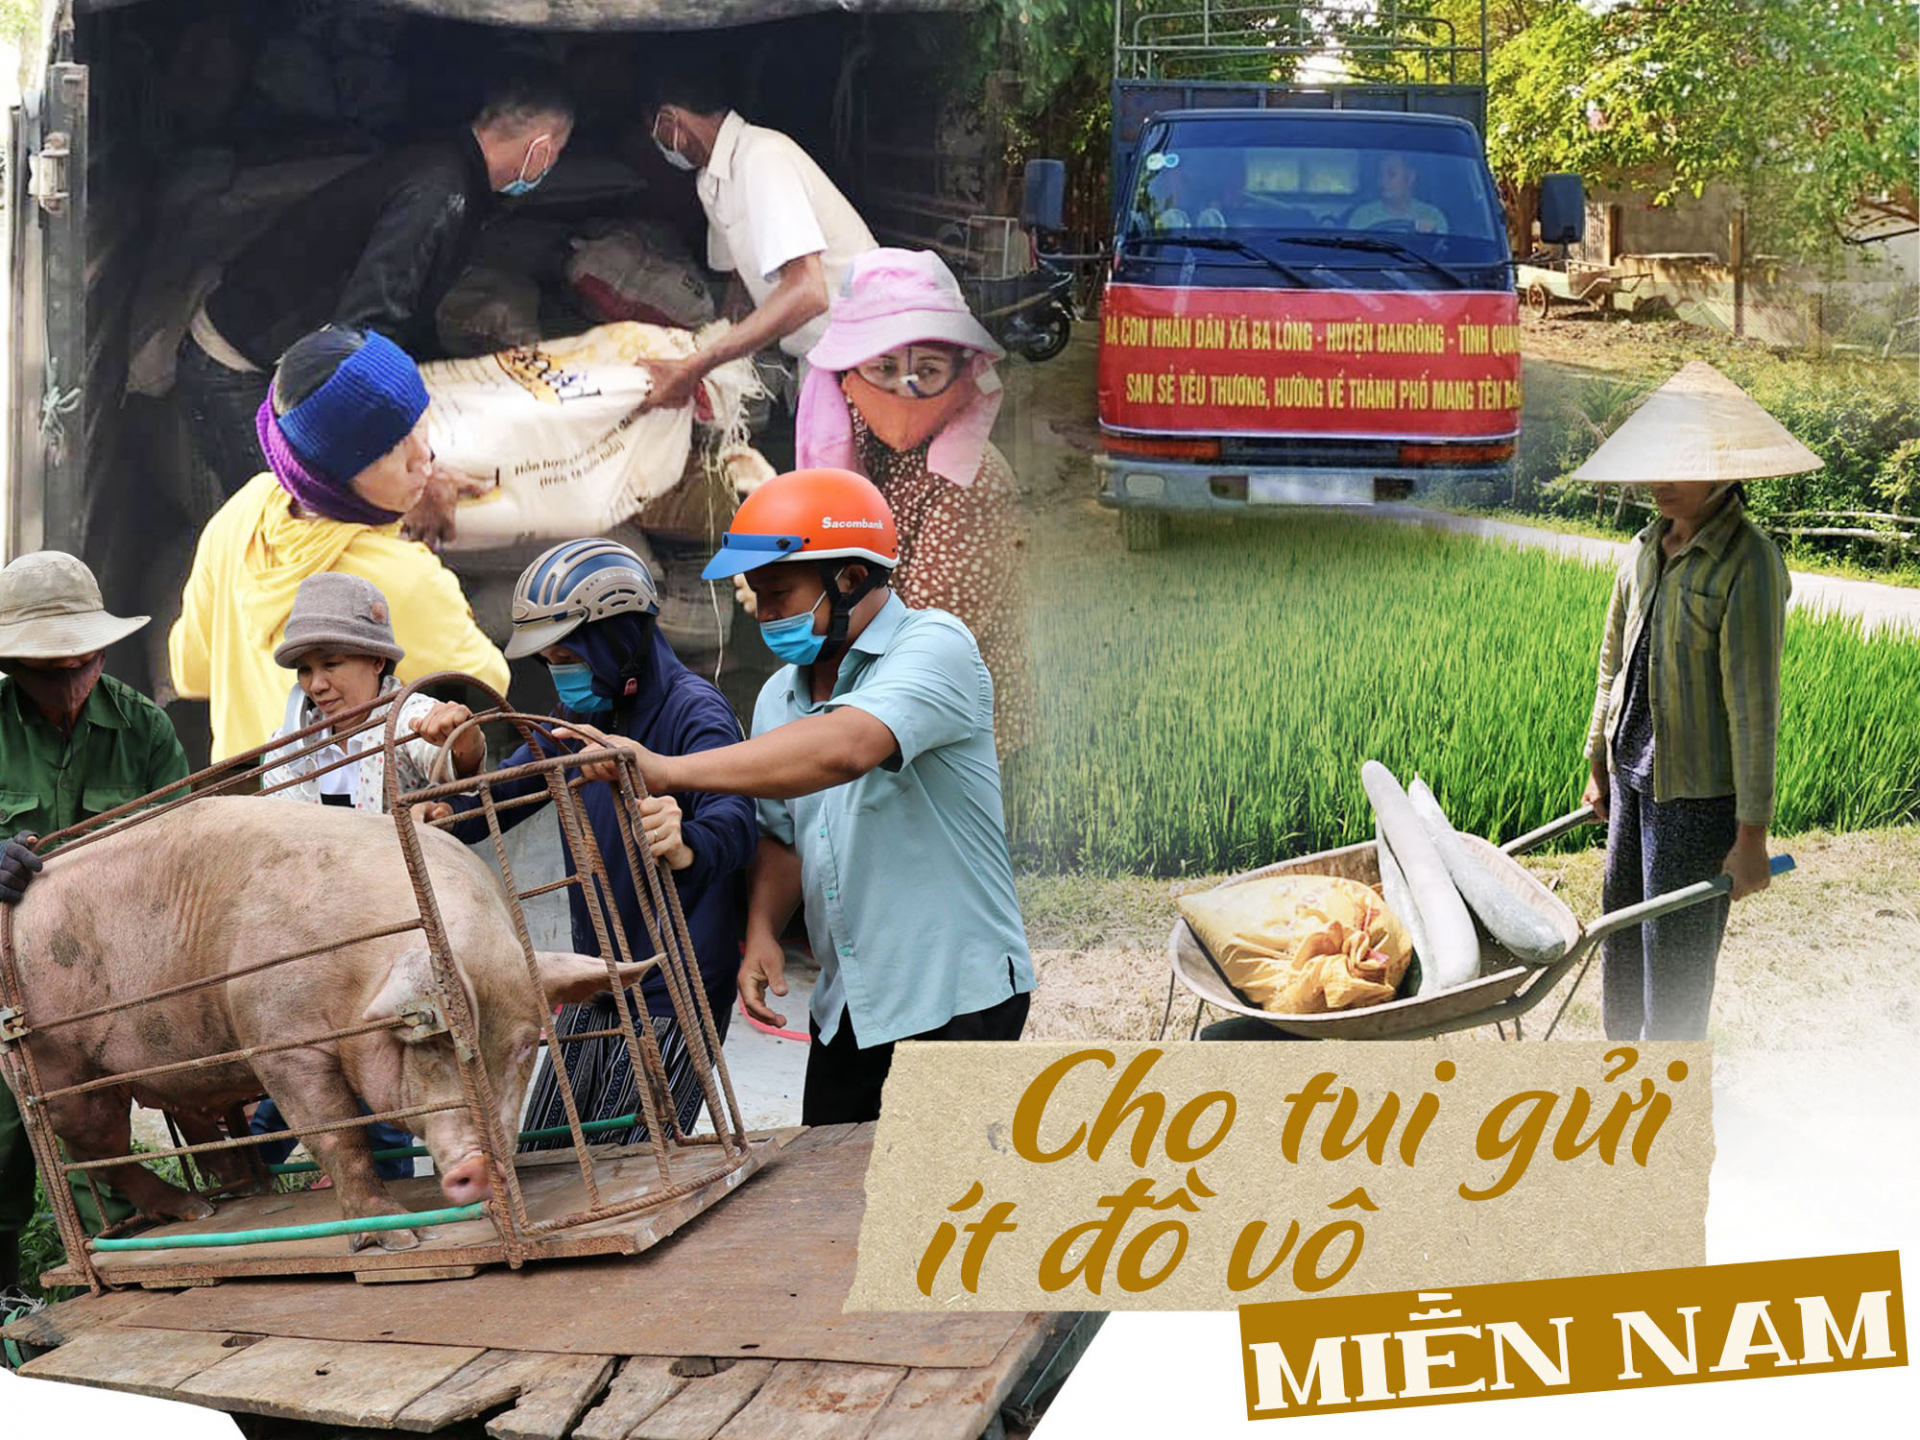 Những chuyến xe nối yêu thương từ miền Trung vào miền Nam: “Cho tui gửi chút đô vô Sài Gòn với”